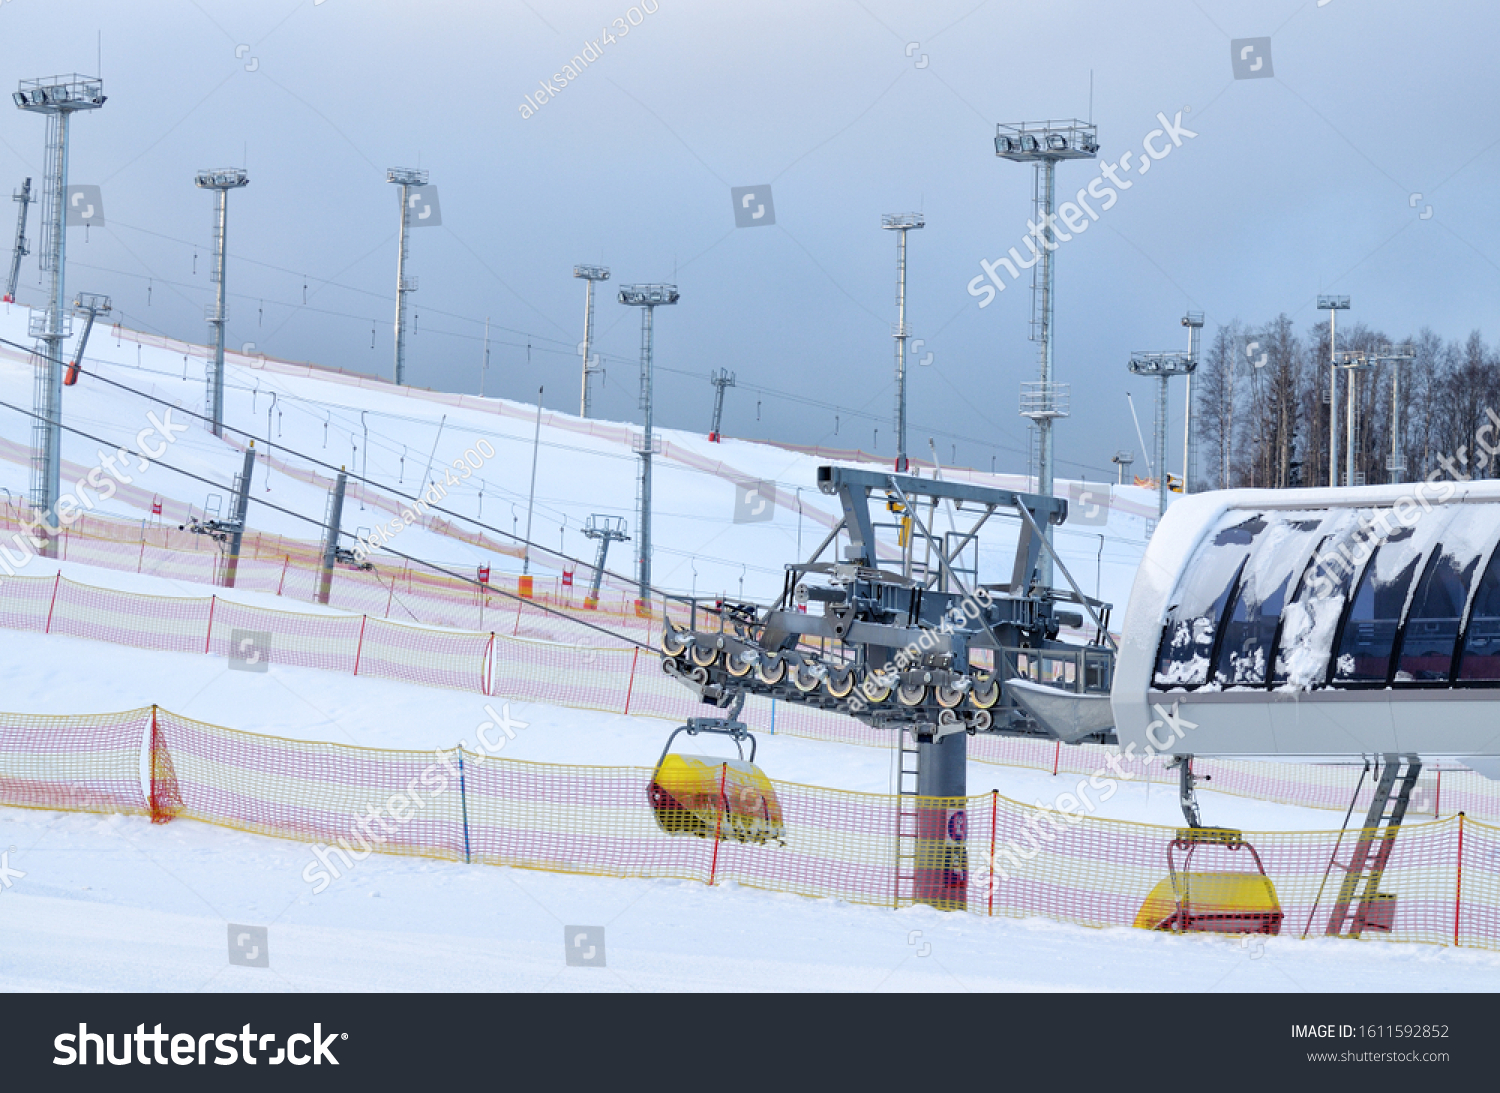 On the ski slopes in winter #1611592852